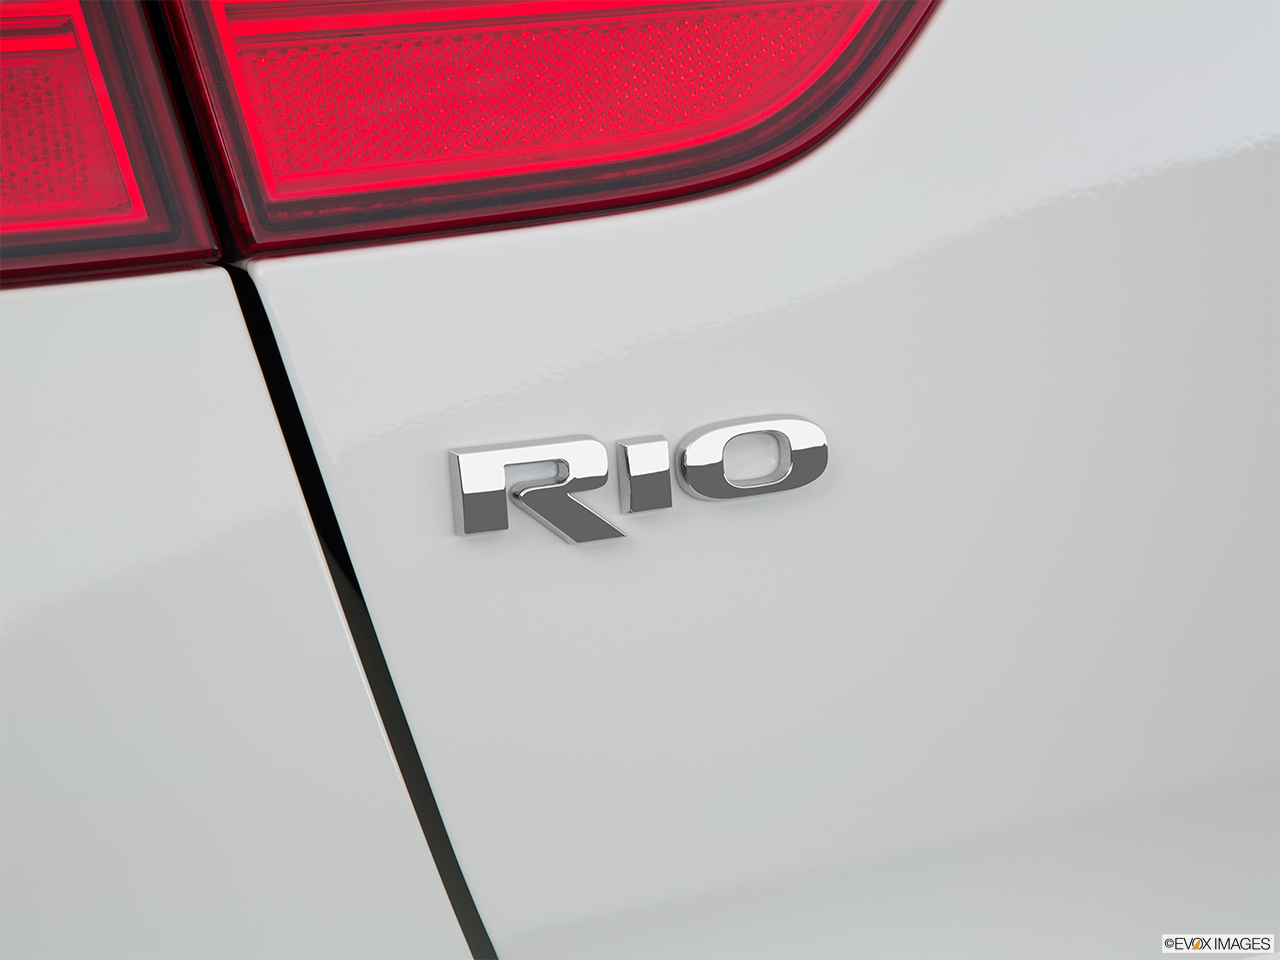 2016 Kia Rio 5-door LX Rear model badge/emblem 